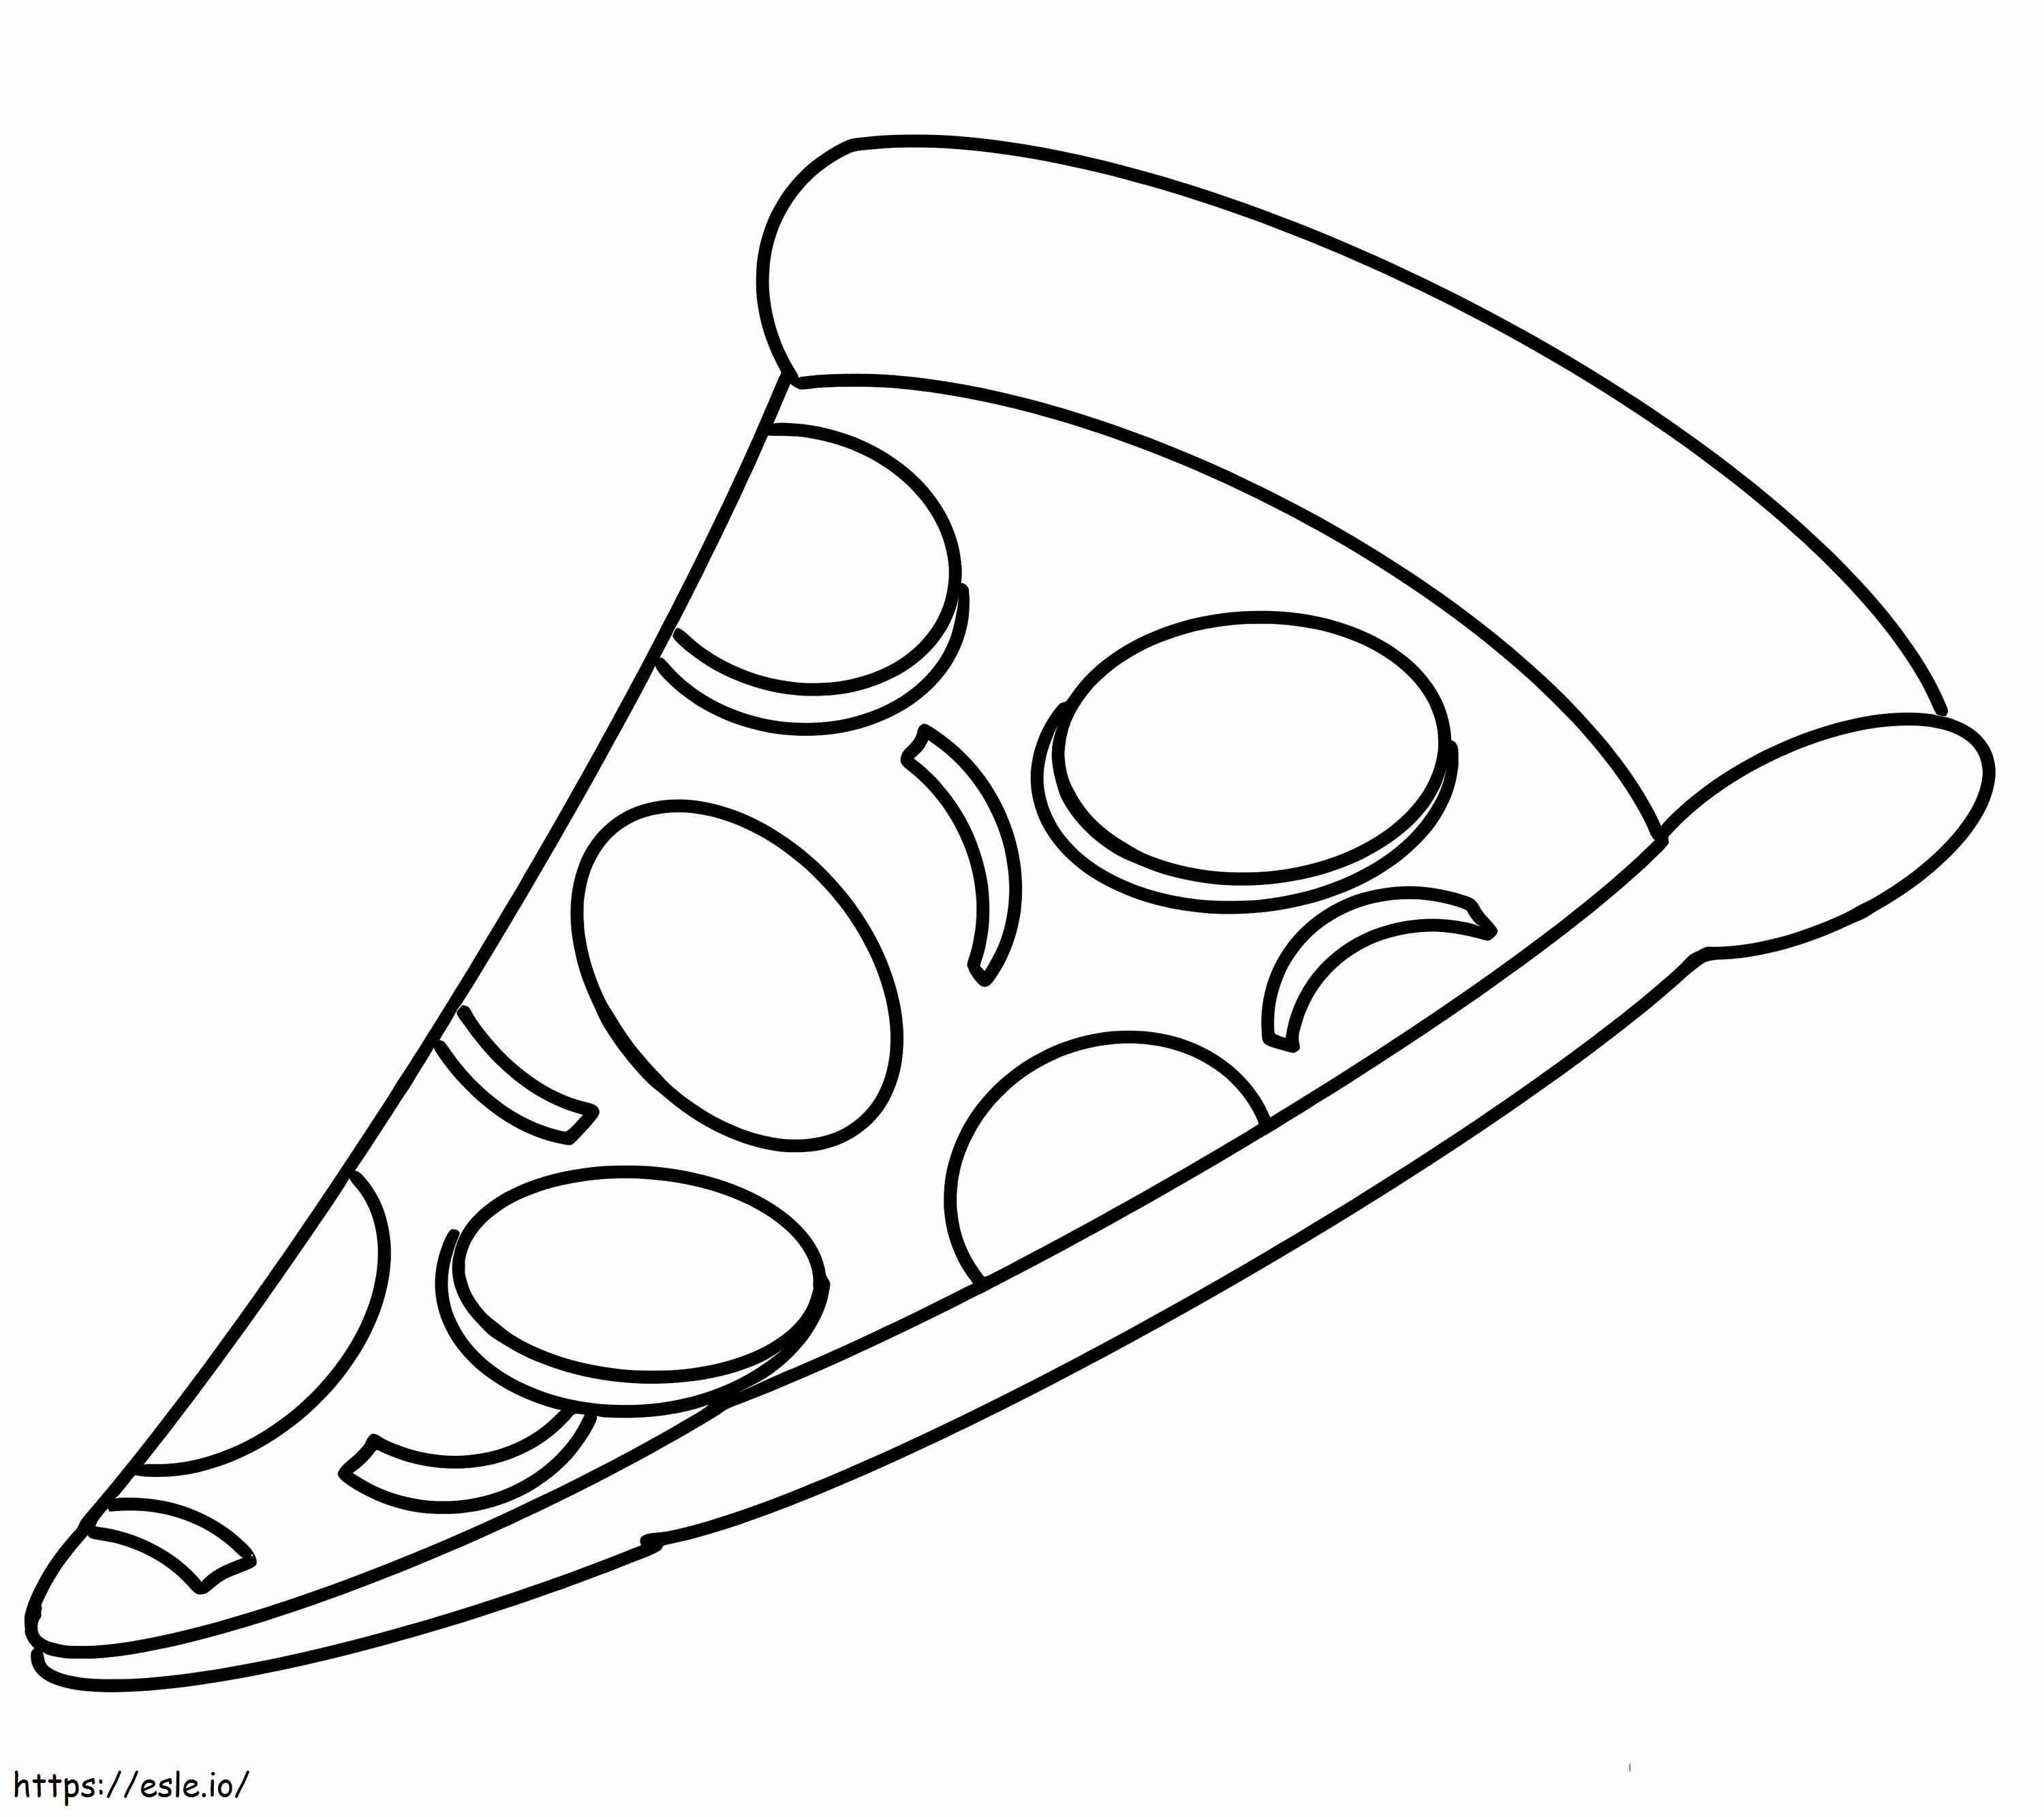 Coloriage Une part de pizza à imprimer dessin